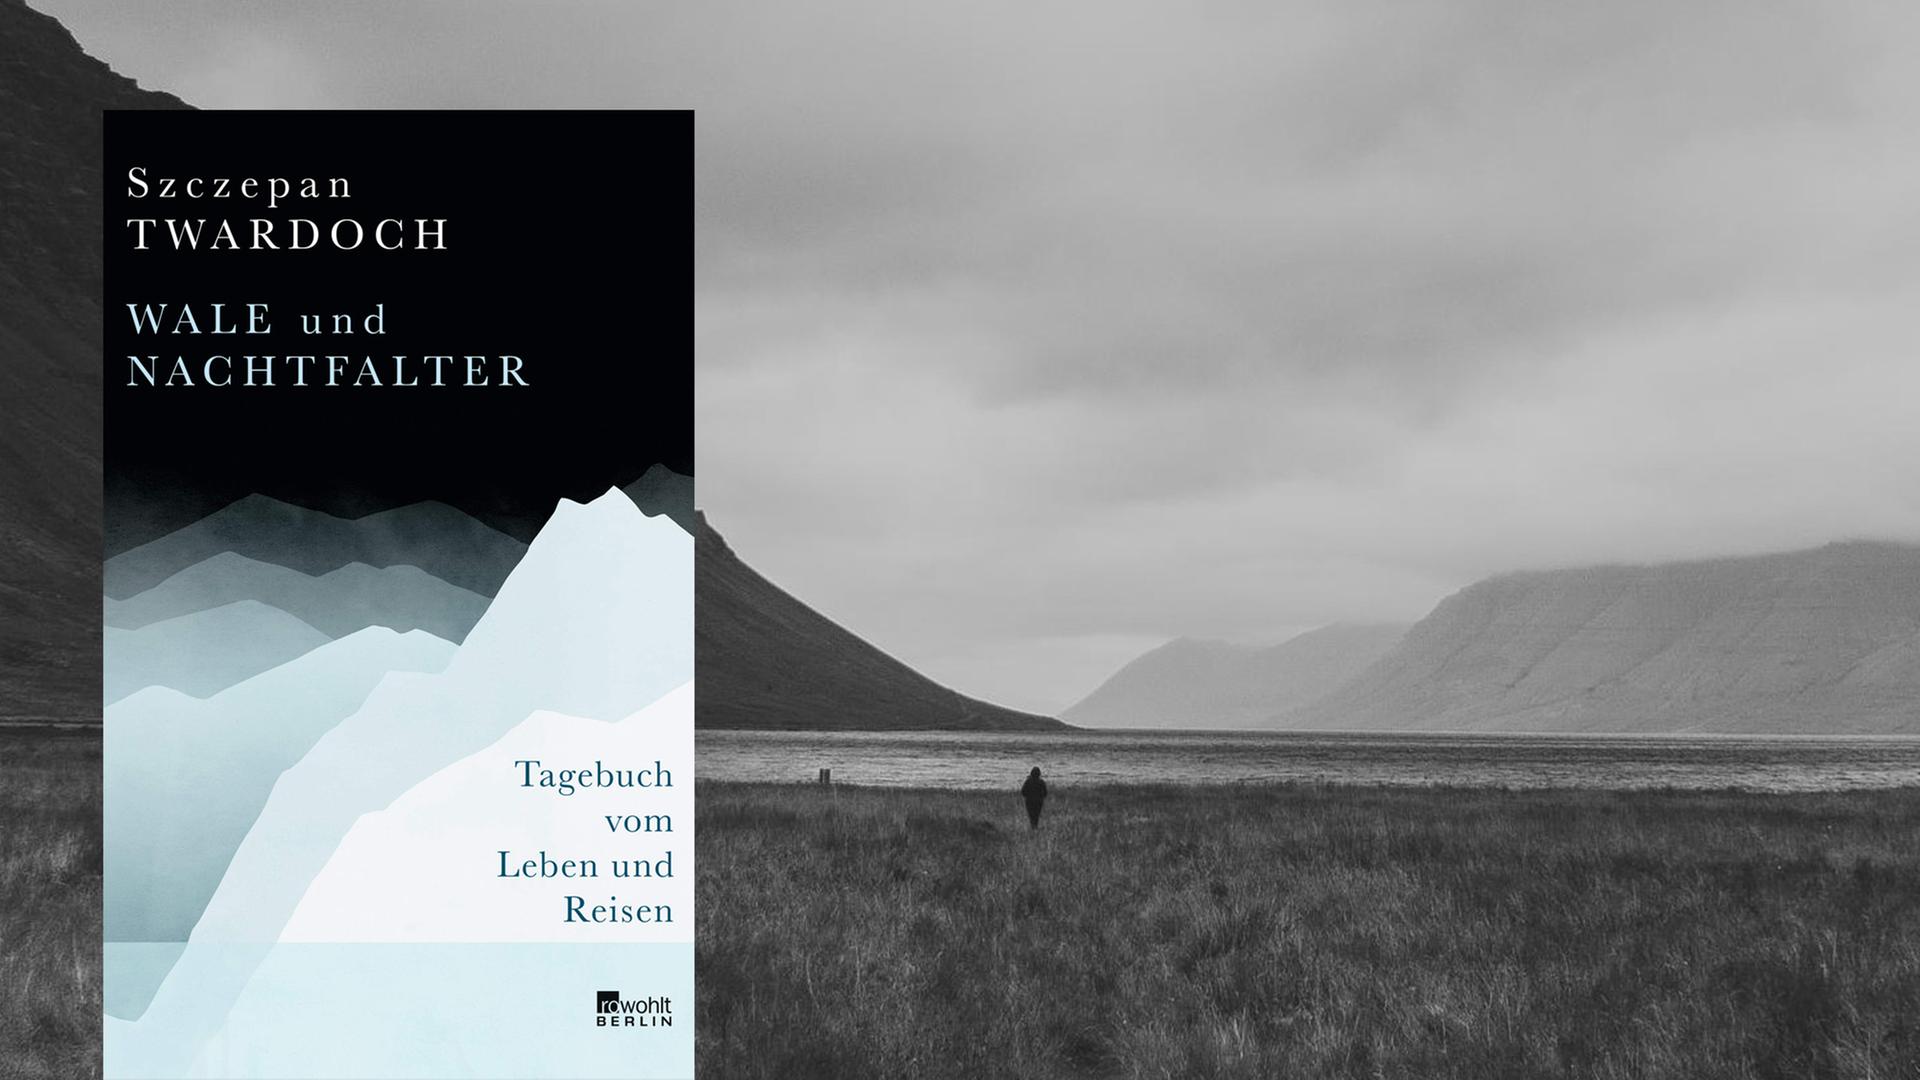 Cover von Szczepan Twardochs Buch "Wale und Nachtfalter. Tagebuch vom Leben und Reisen". Im Hintergrund ist ein Schwarz-Weiß-Foto einer nebeligen Landschaft zu sehen.